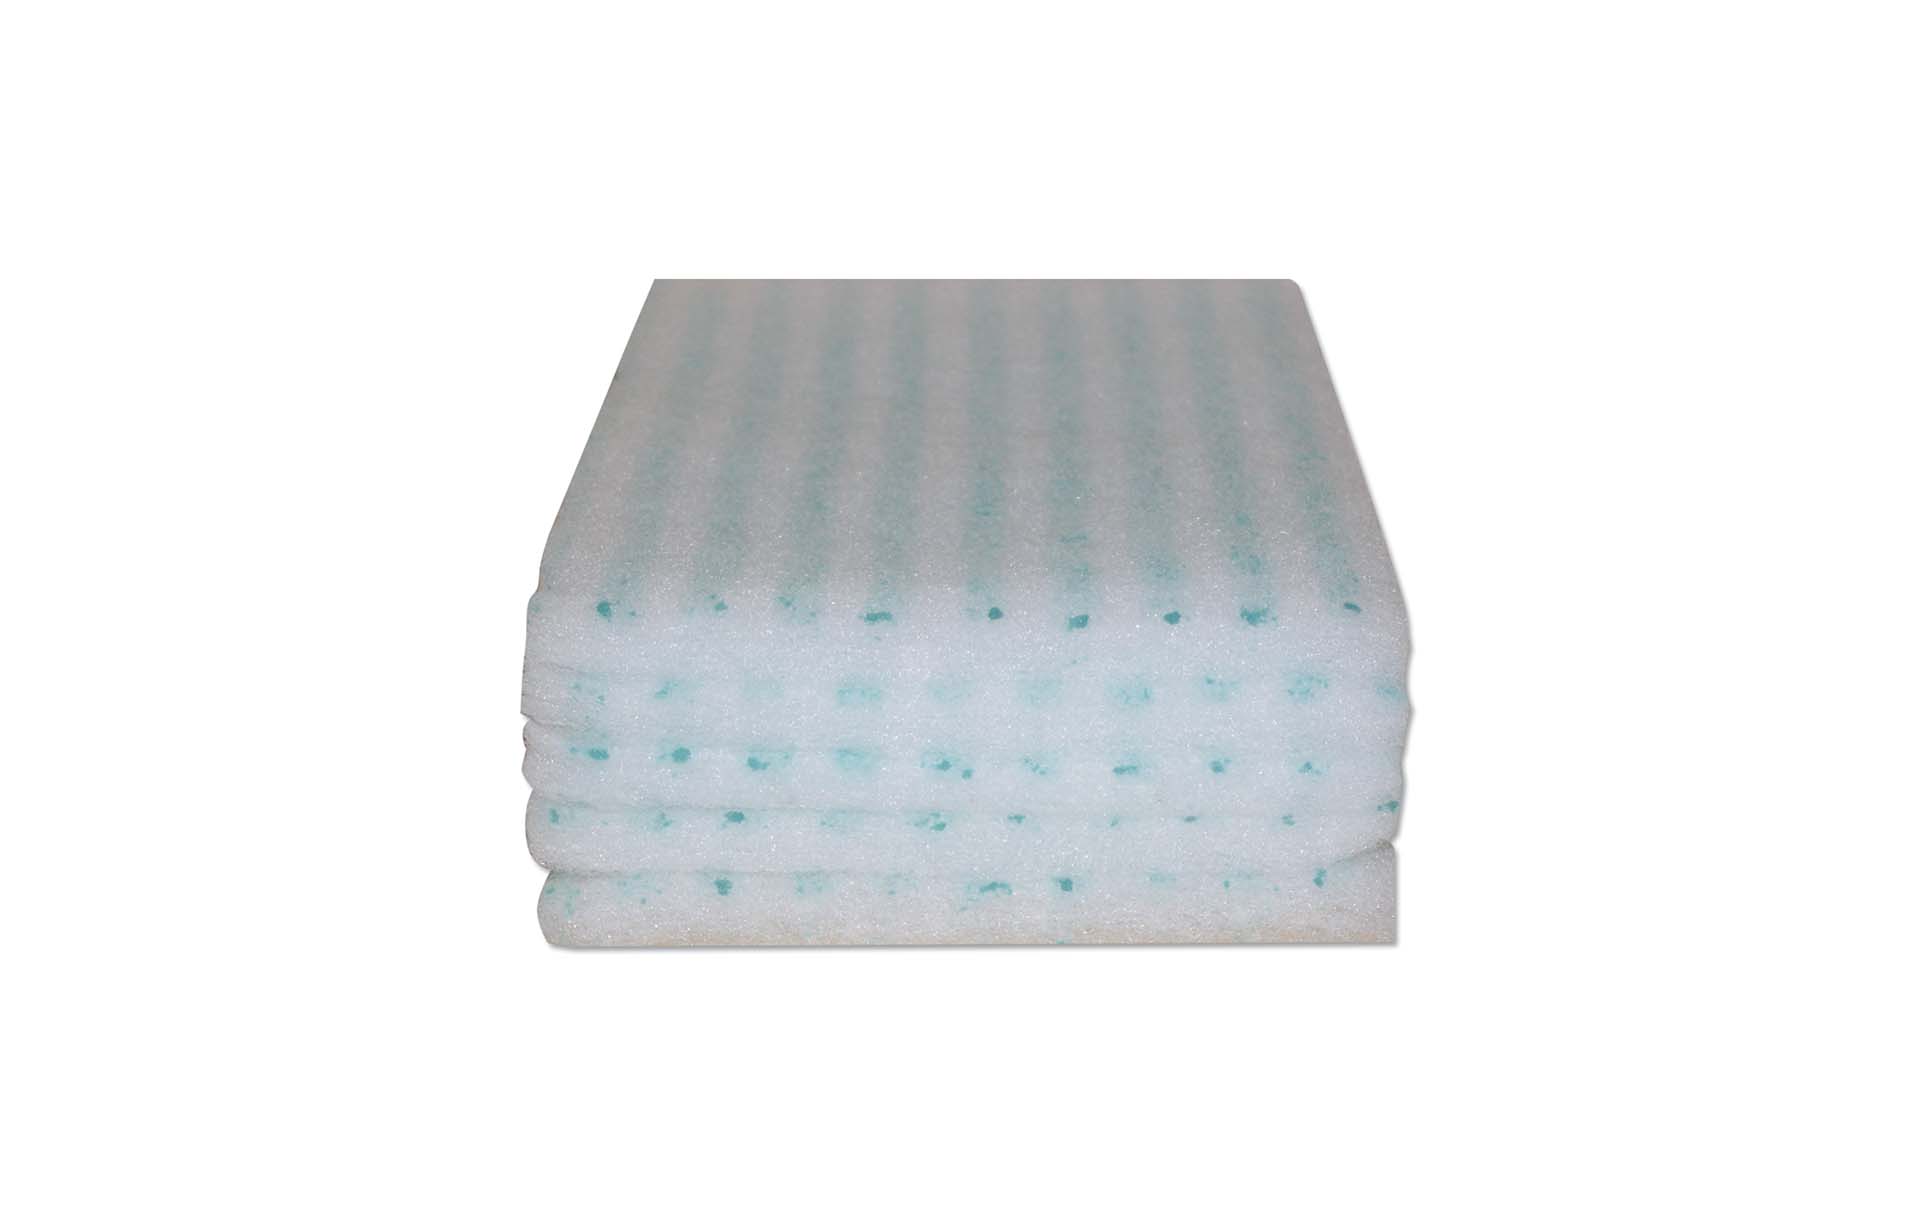 Las esponjas con jabón dos en uno son el nuevo producto de higiene